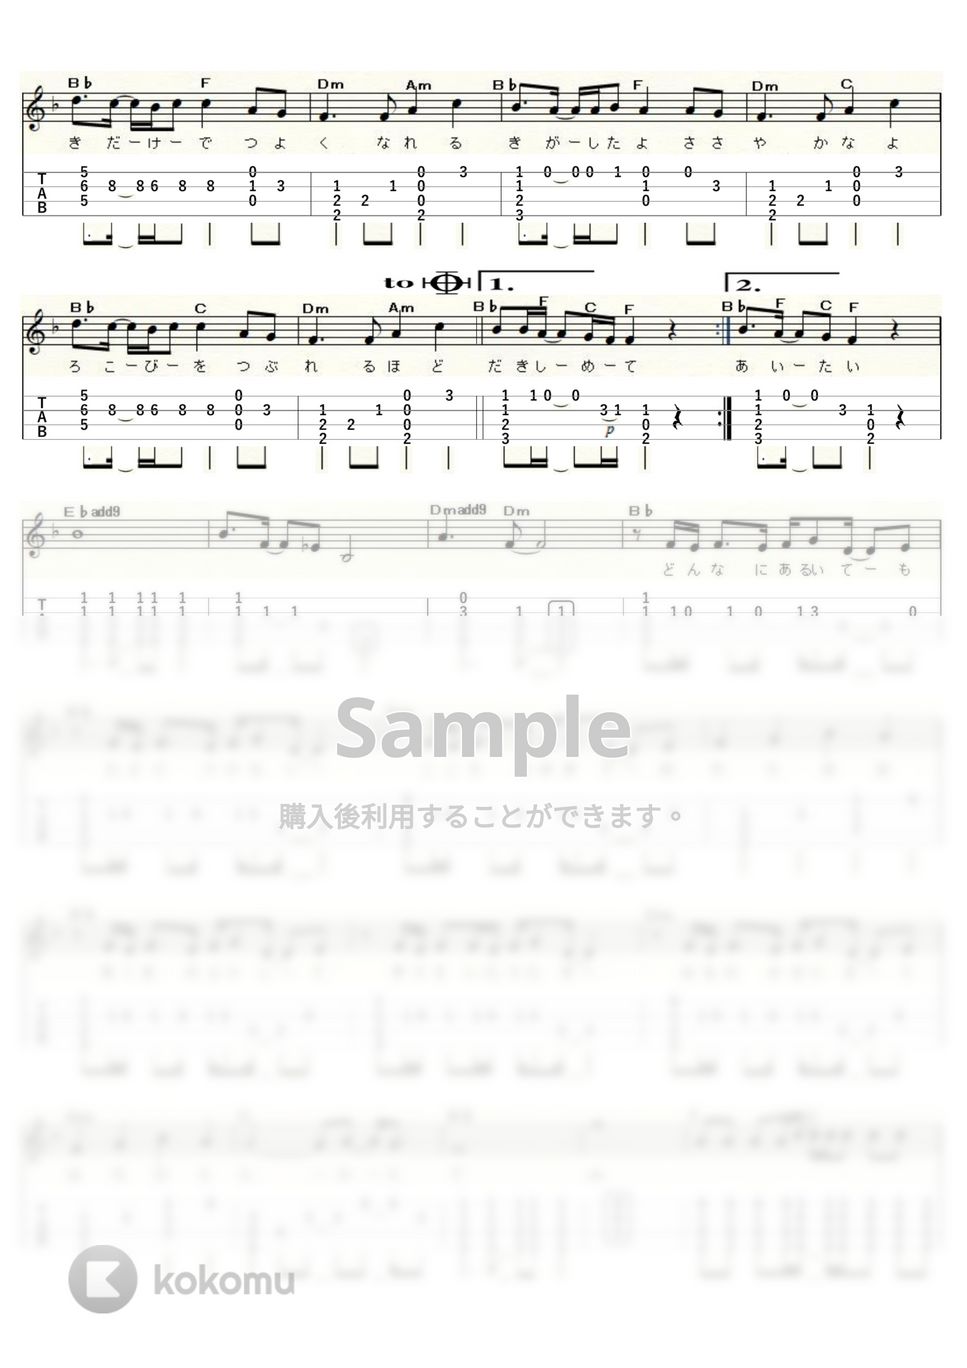 スピッツ - チェリー (ｳｸﾚﾚｿﾛ/Low-G/中級) by ukulelepapa